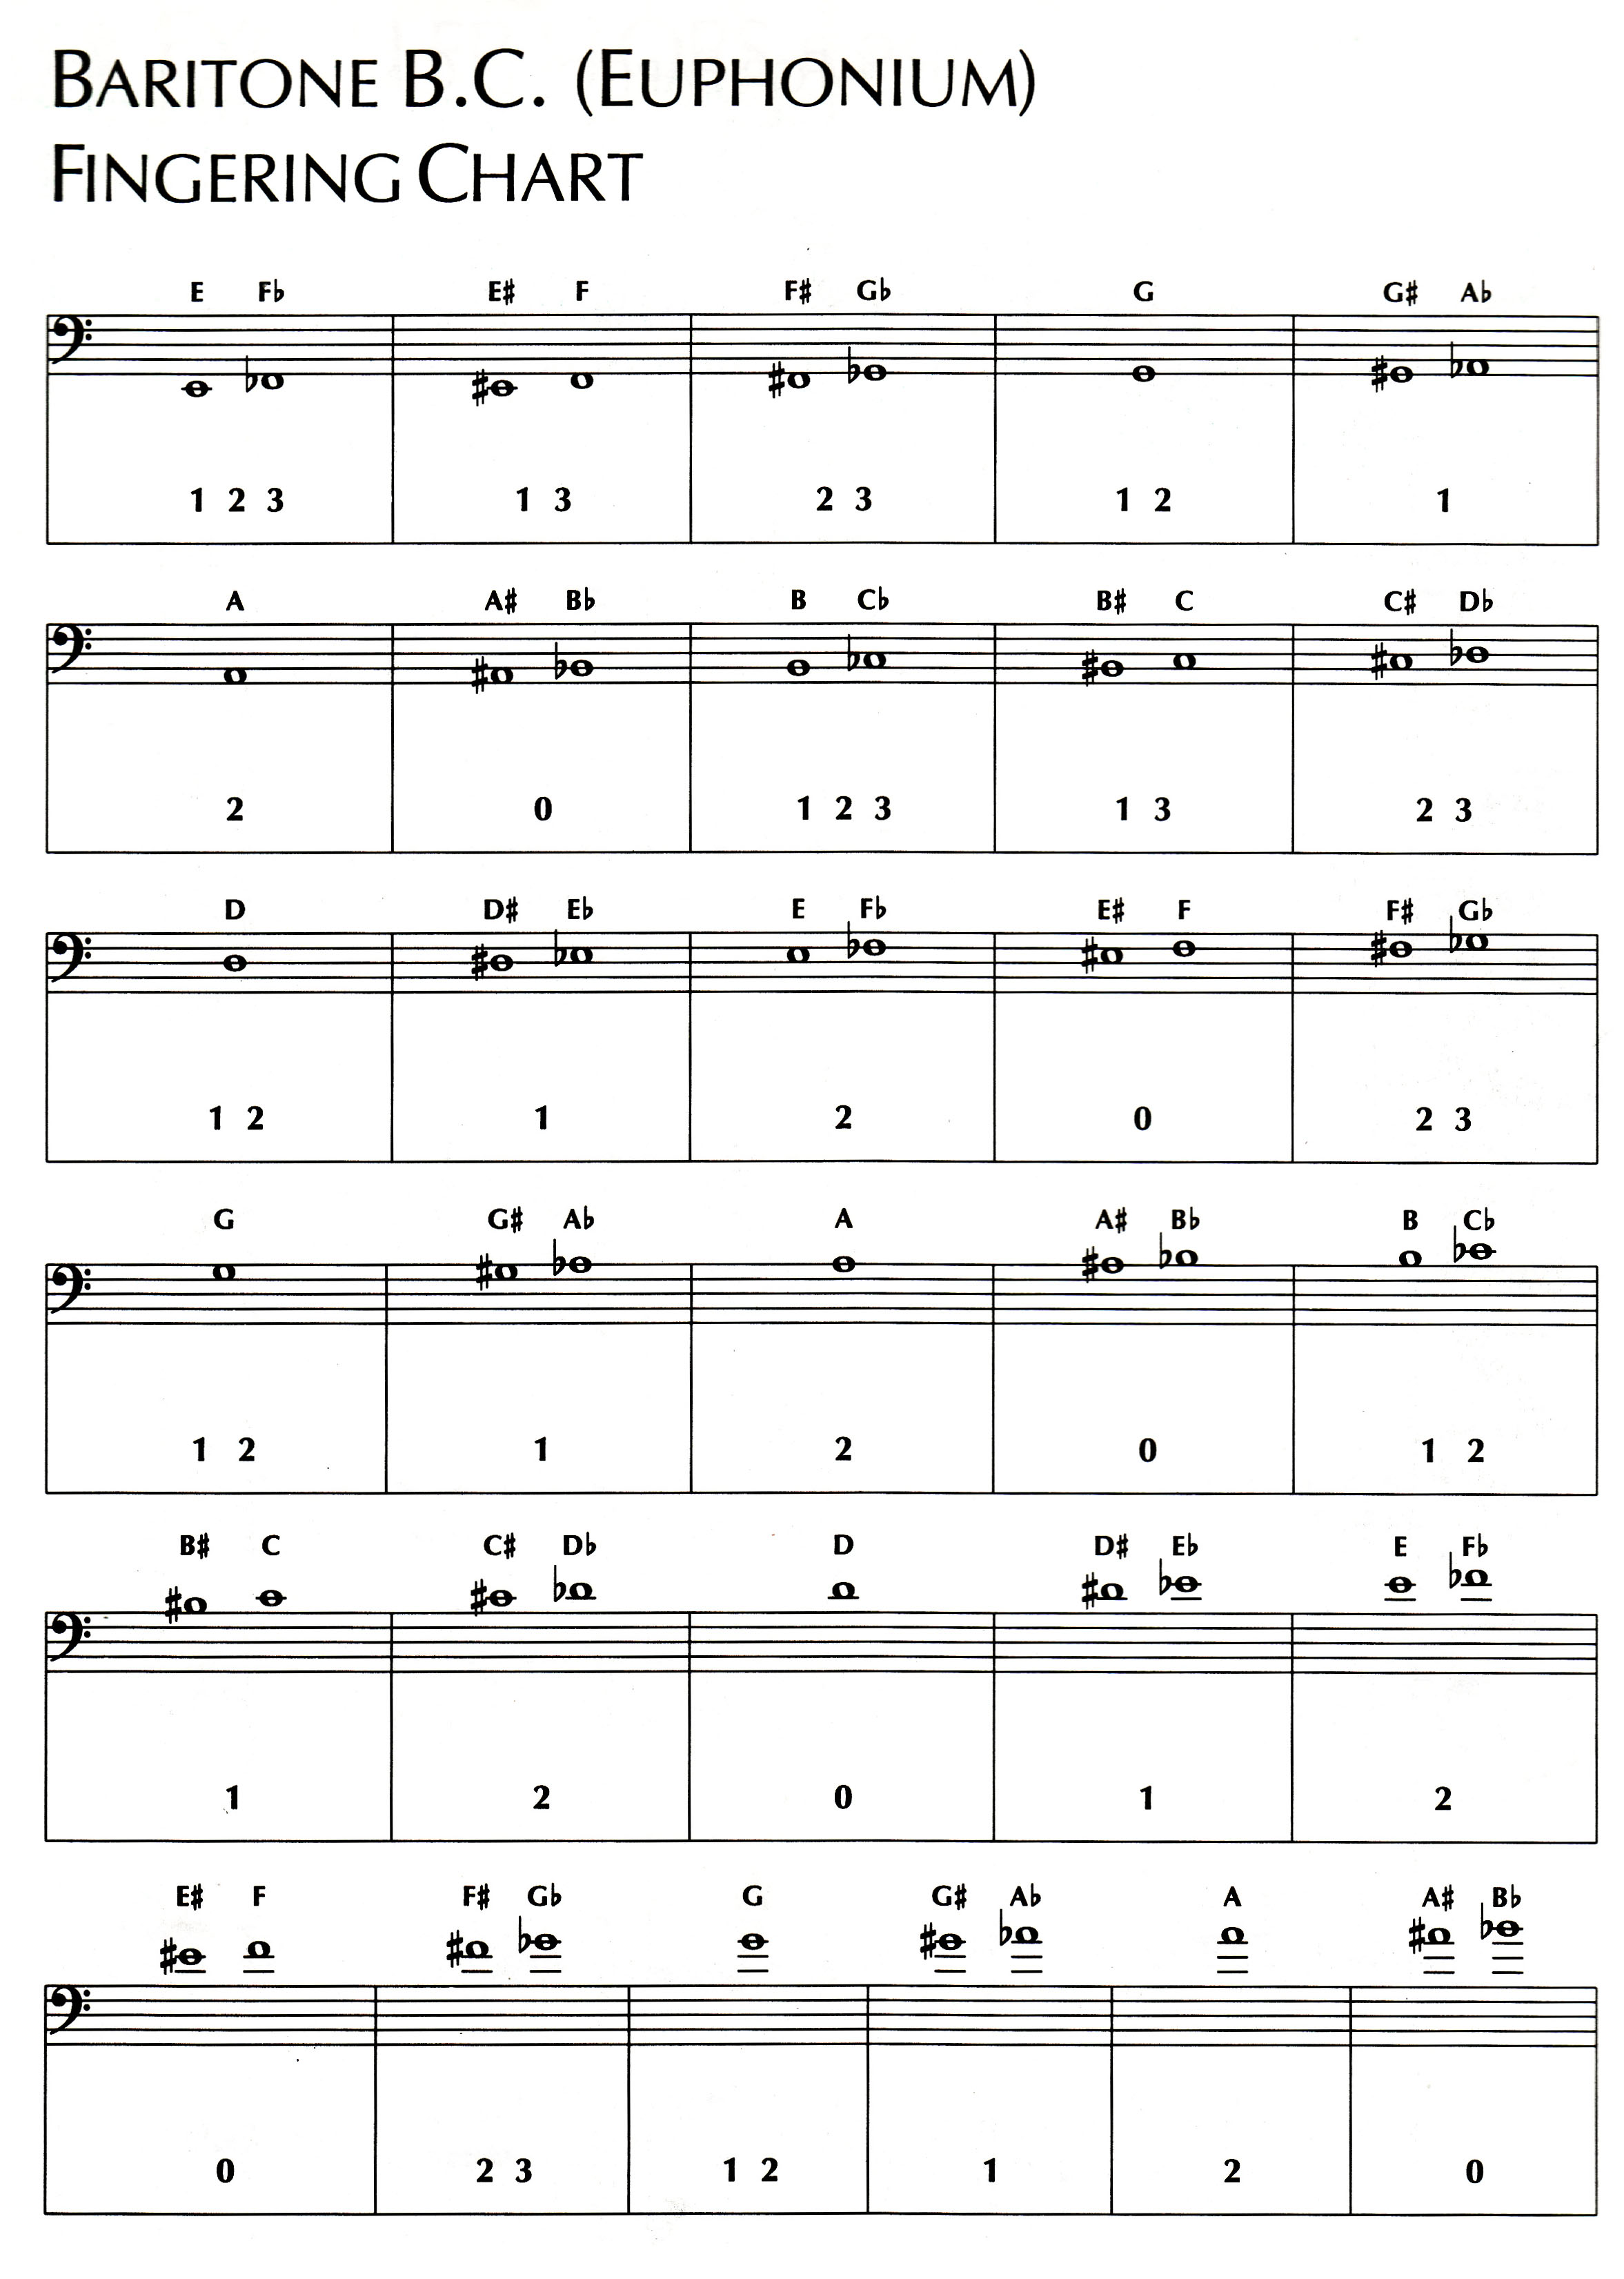 Soprano Saxophone Mouthpiece Comparison Chart